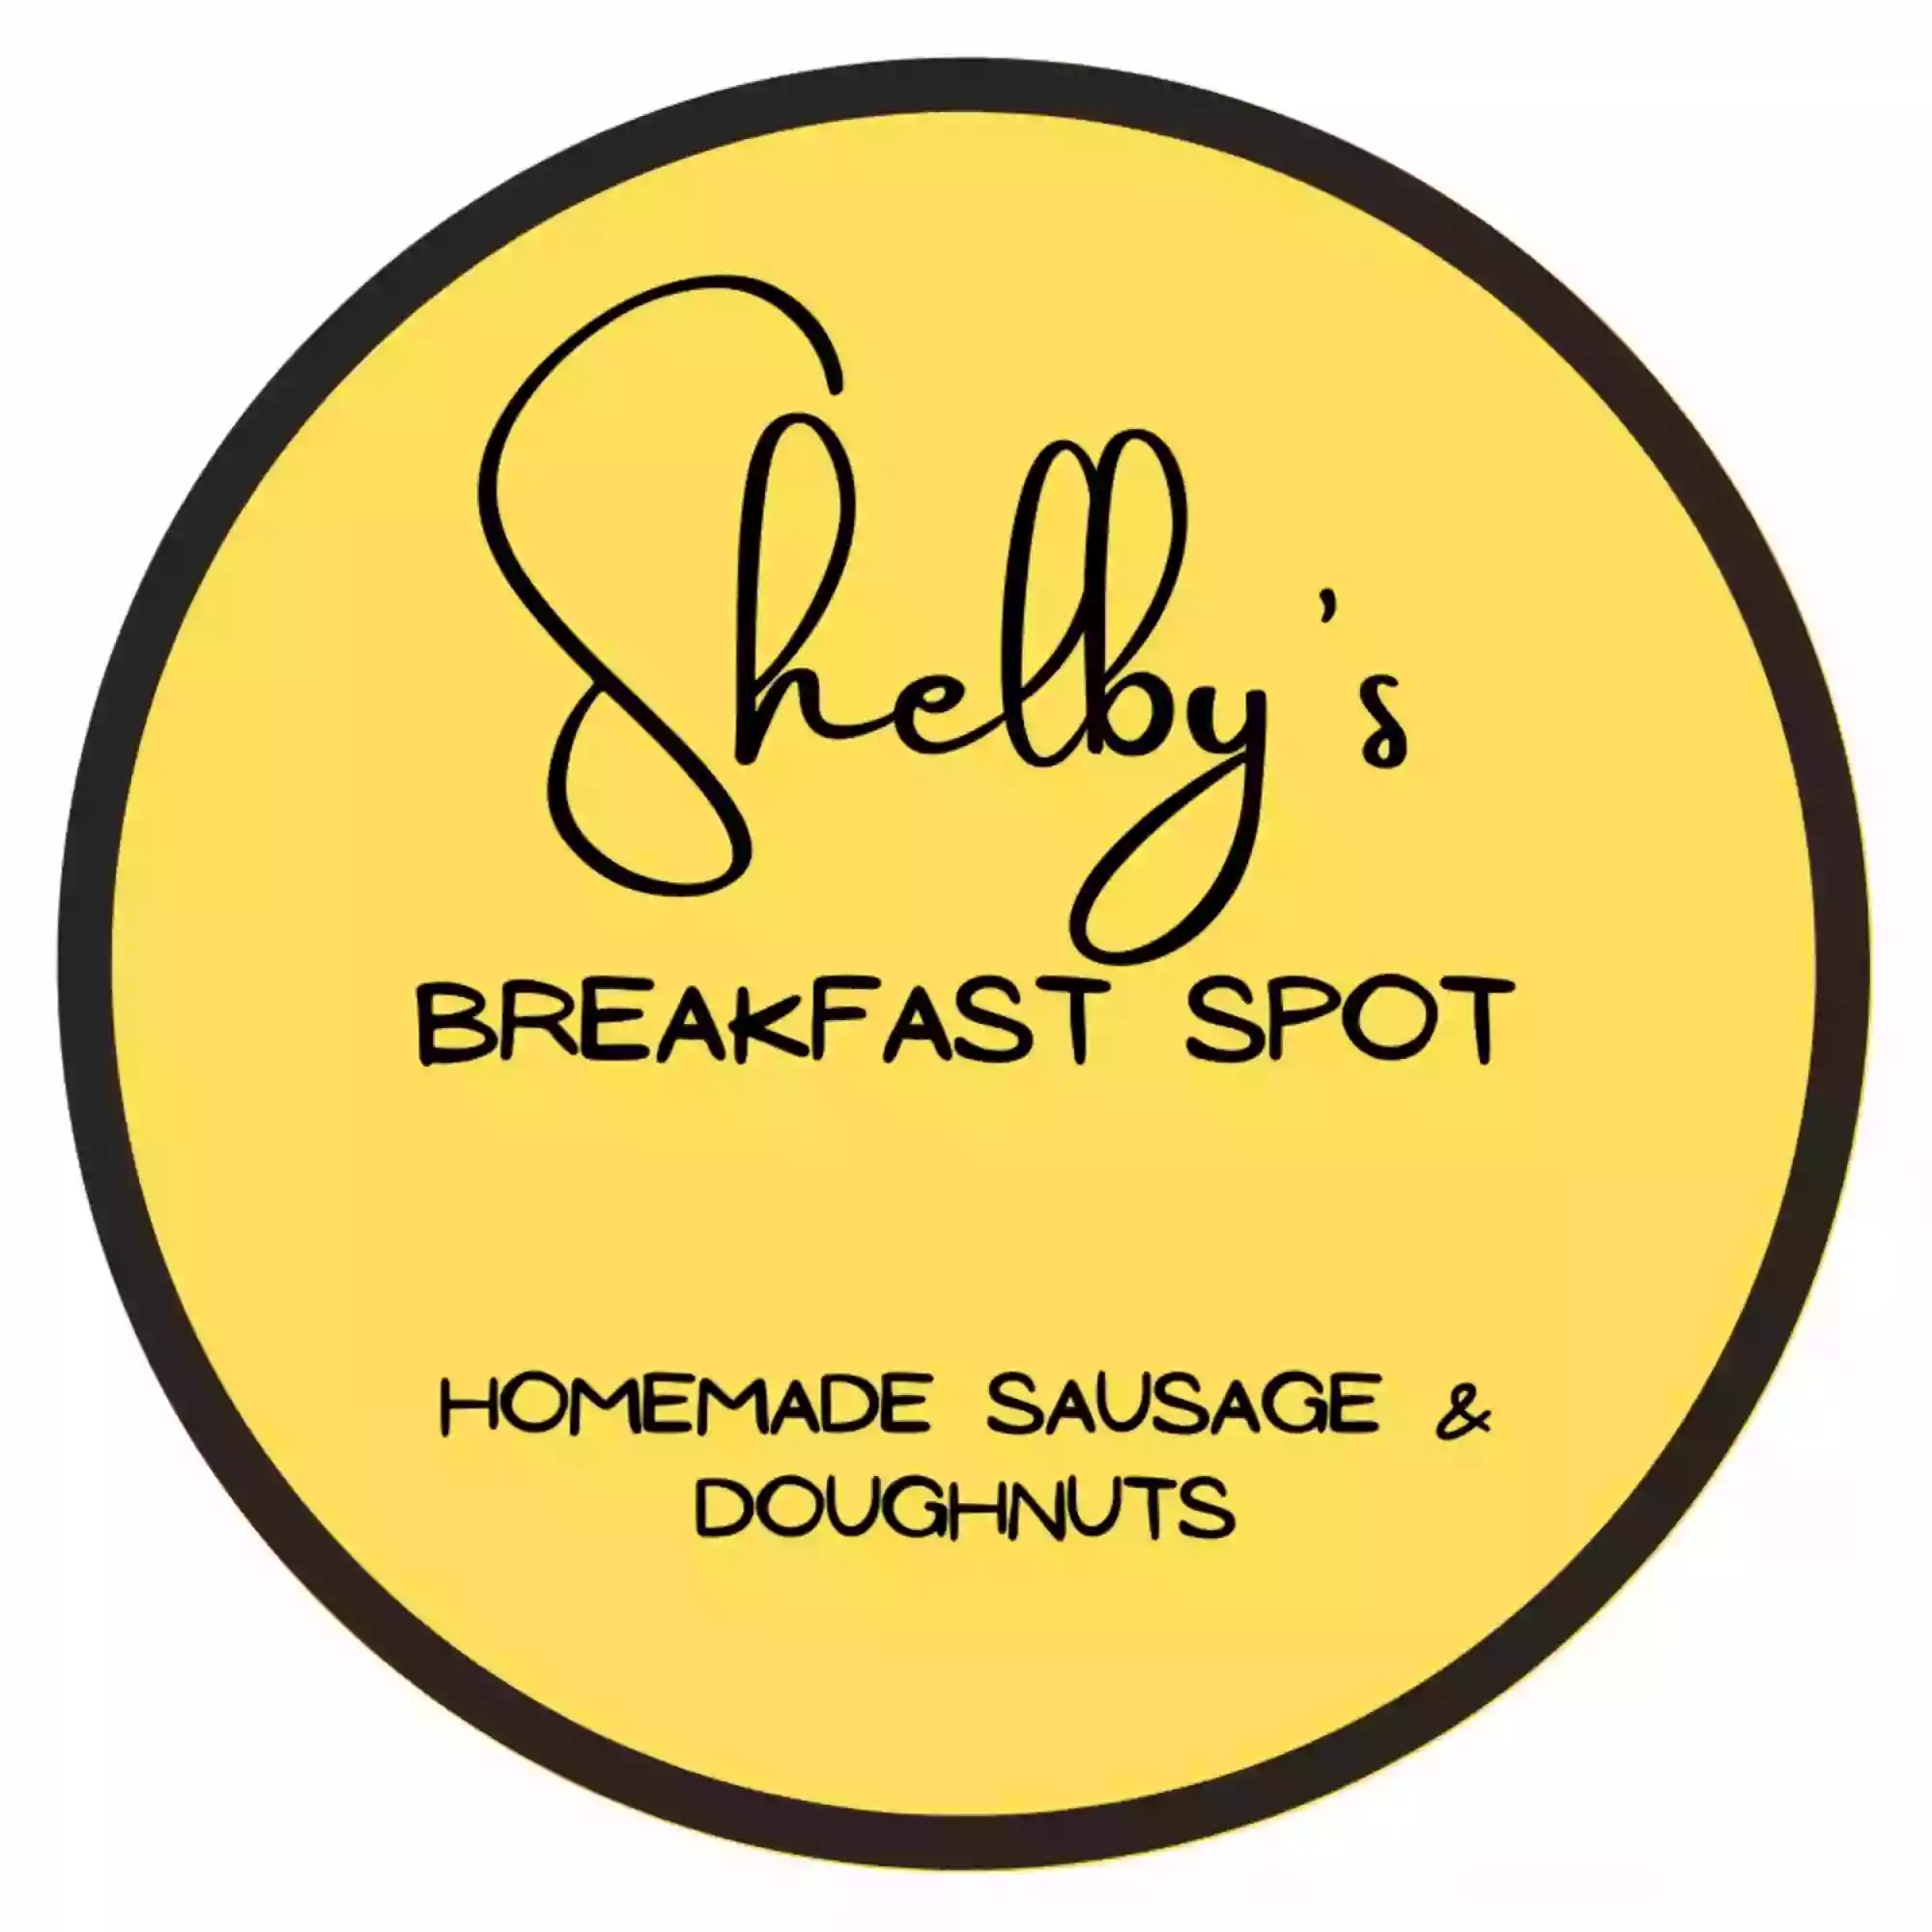 Shelby's Breakfast Spot